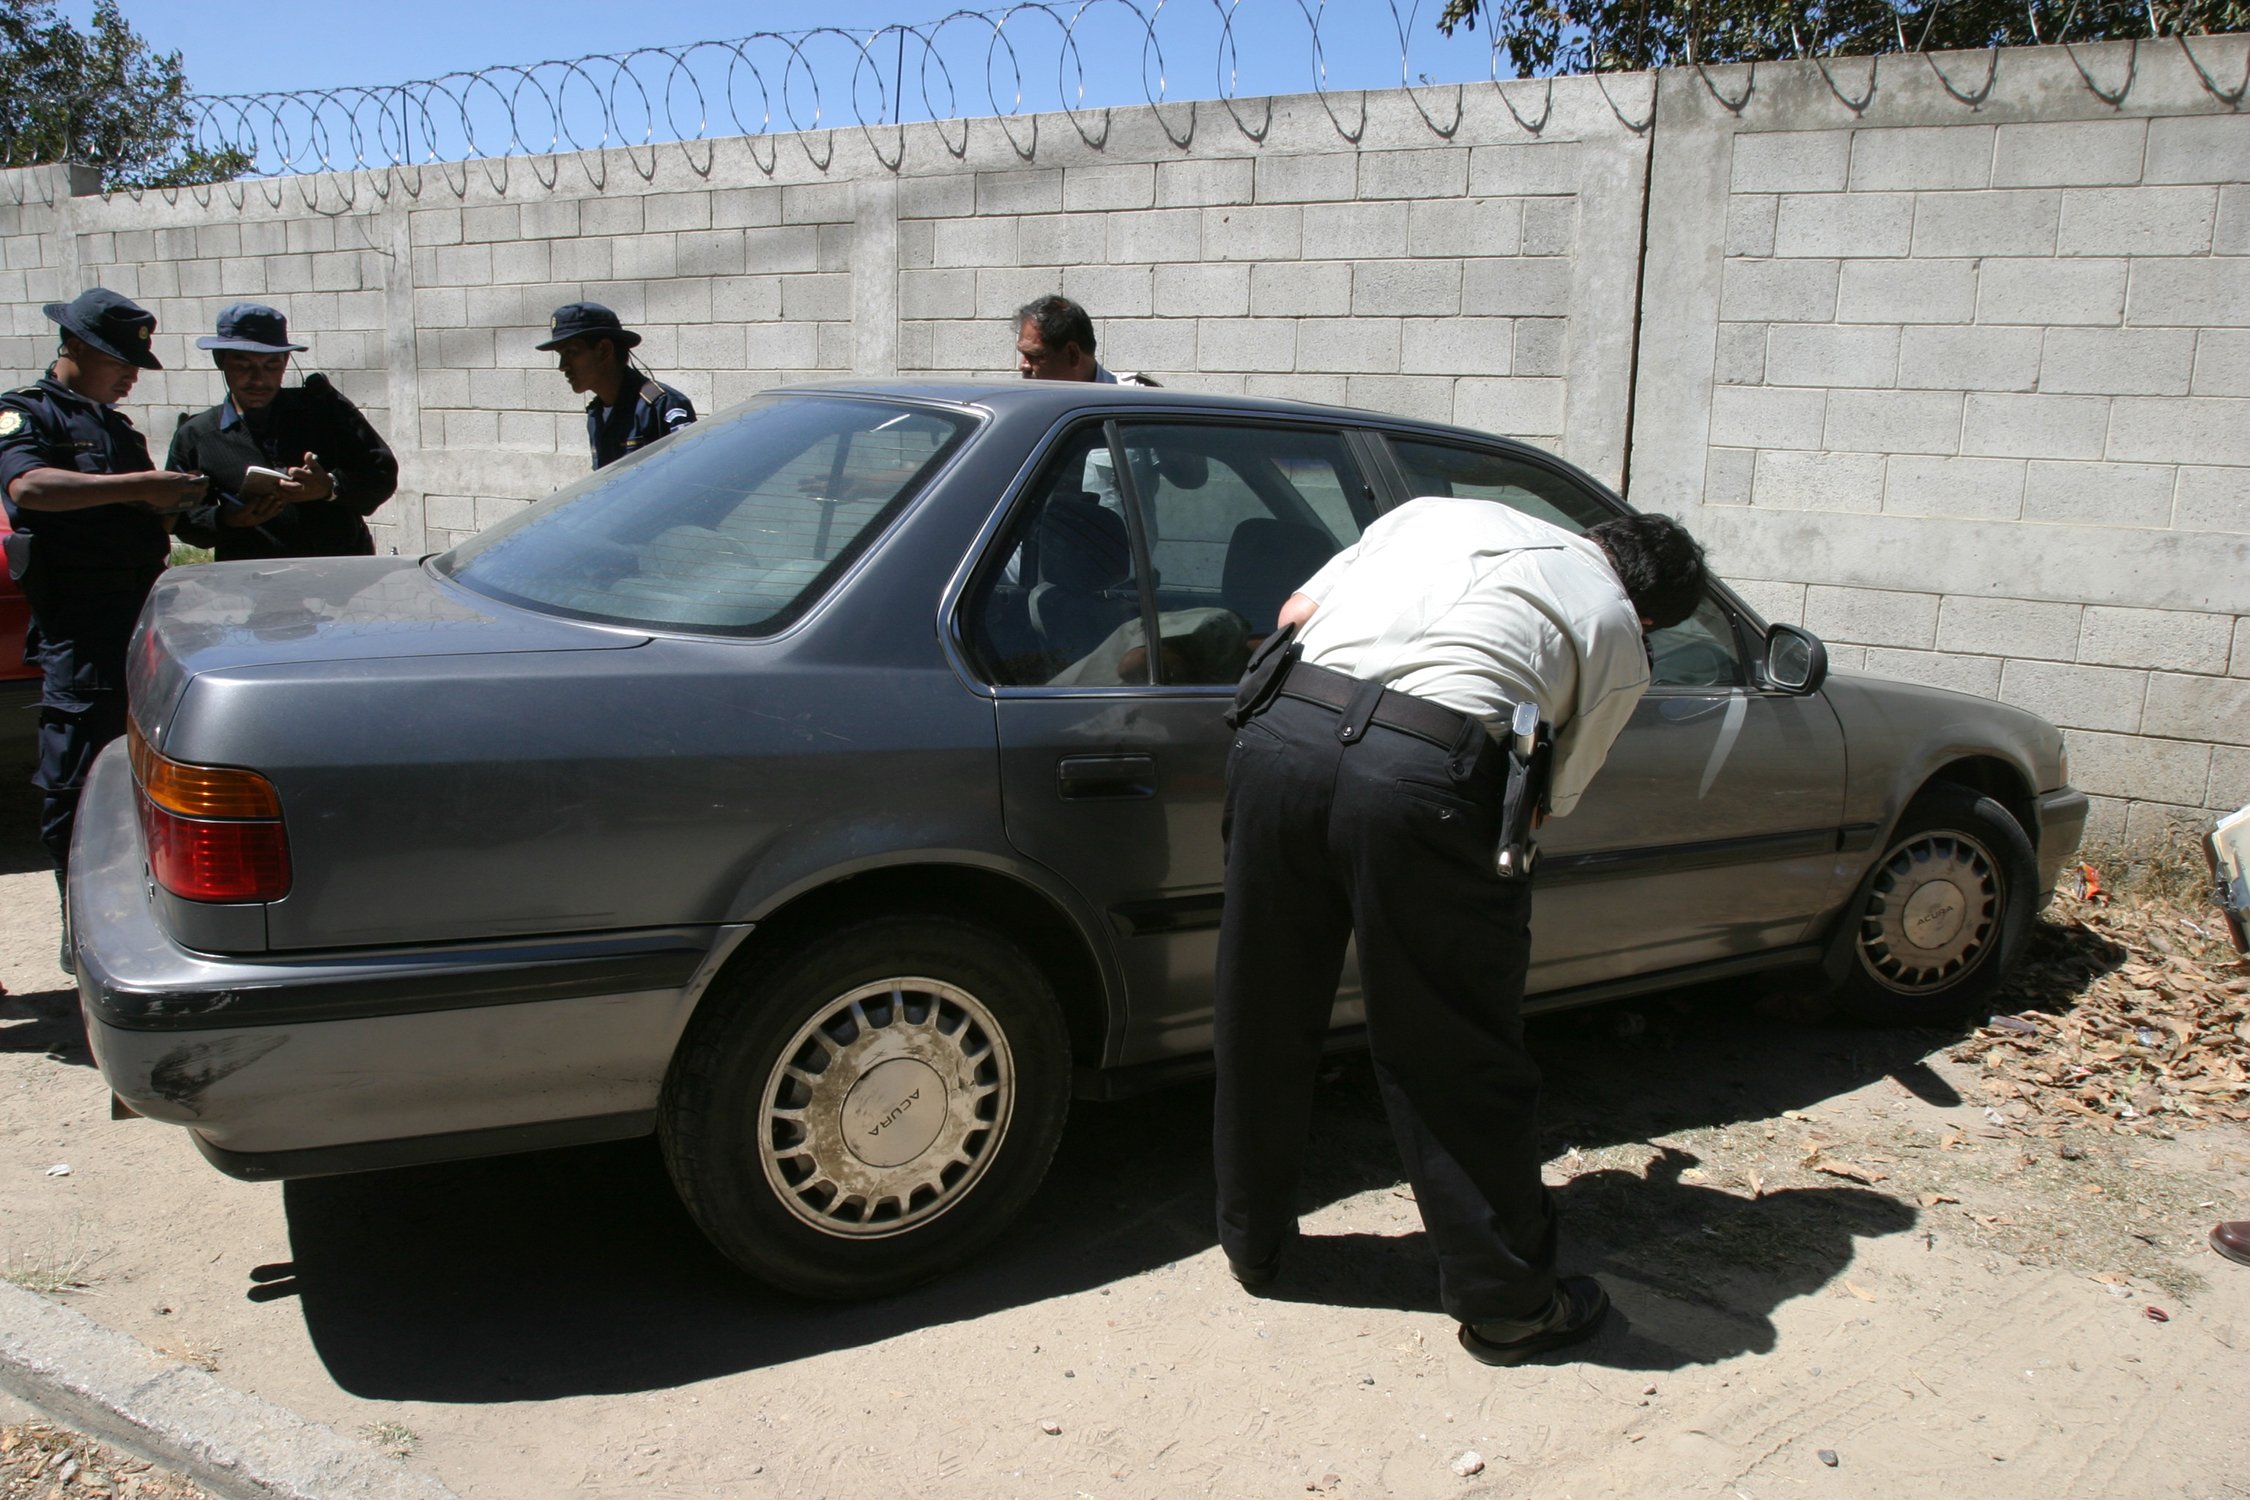 Investigadores policiales y del MP acuden al lugar donde se ubicó un vehículo con reporte de robo. (Foto Prensa Libre: archivo )